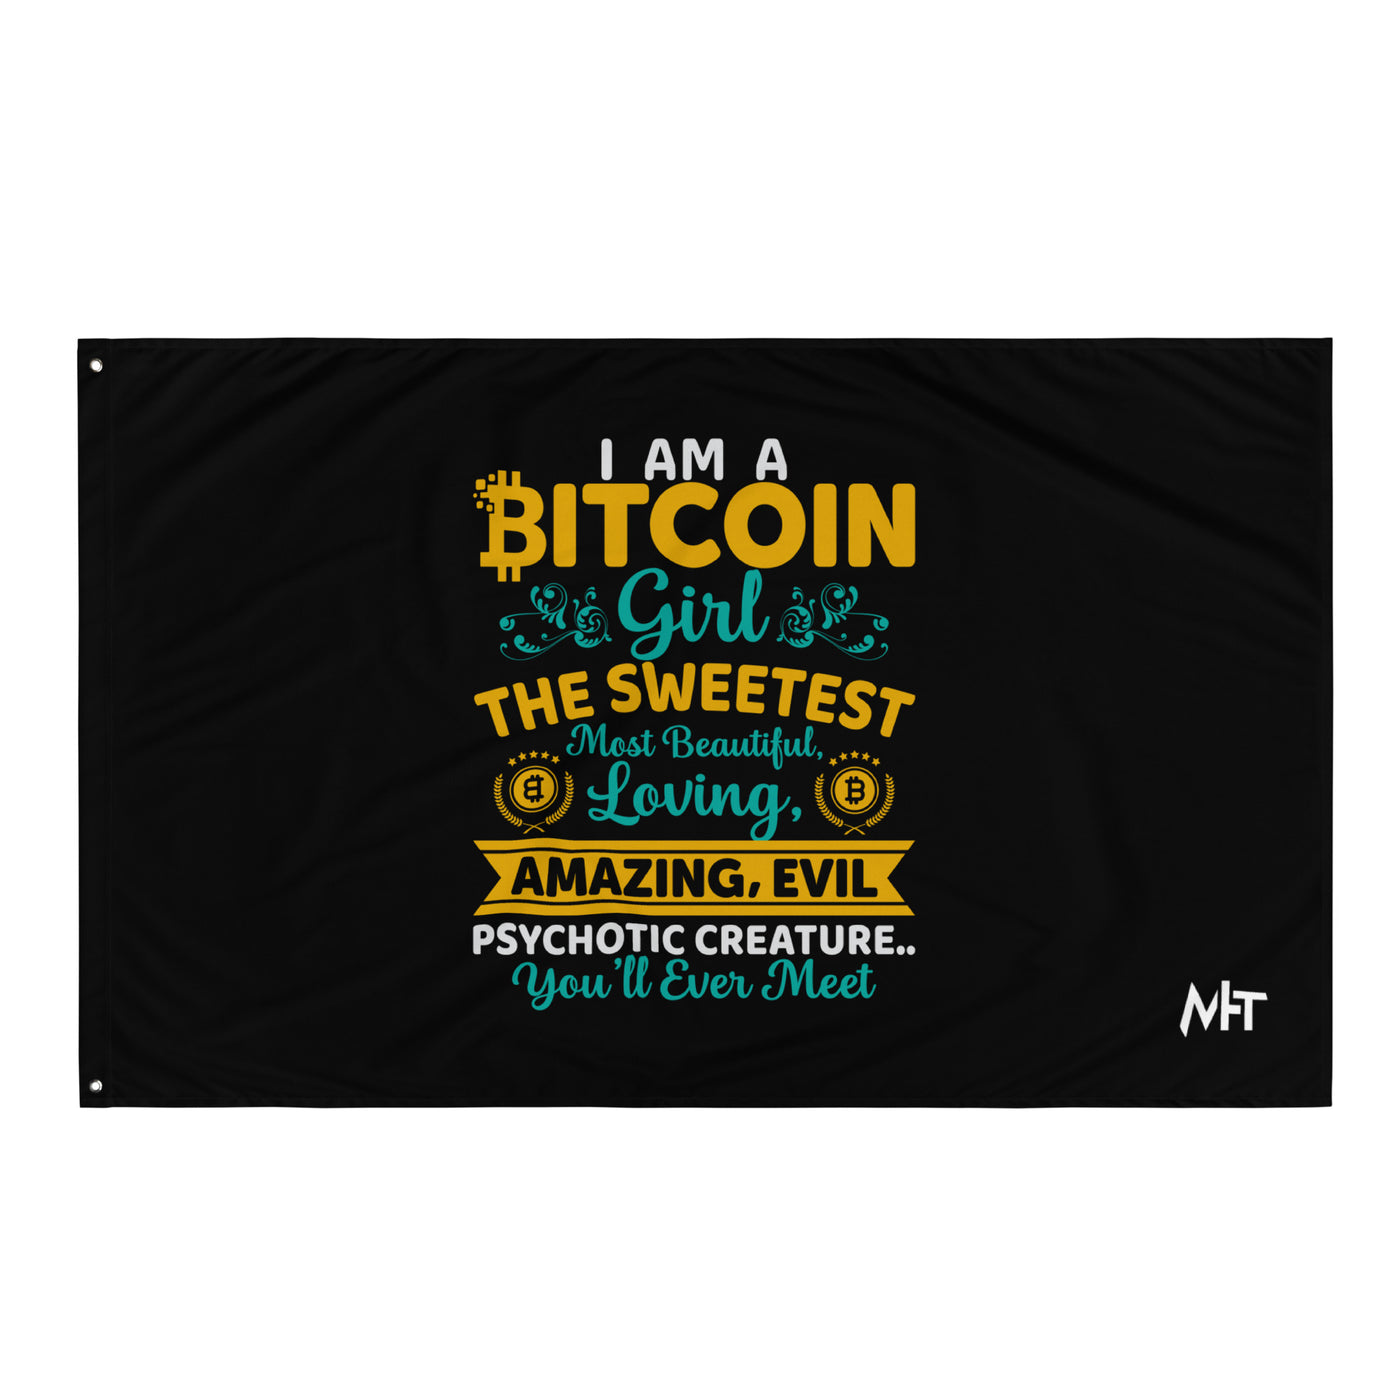 I am a Bitcoin Girl, the sweetest - Flag